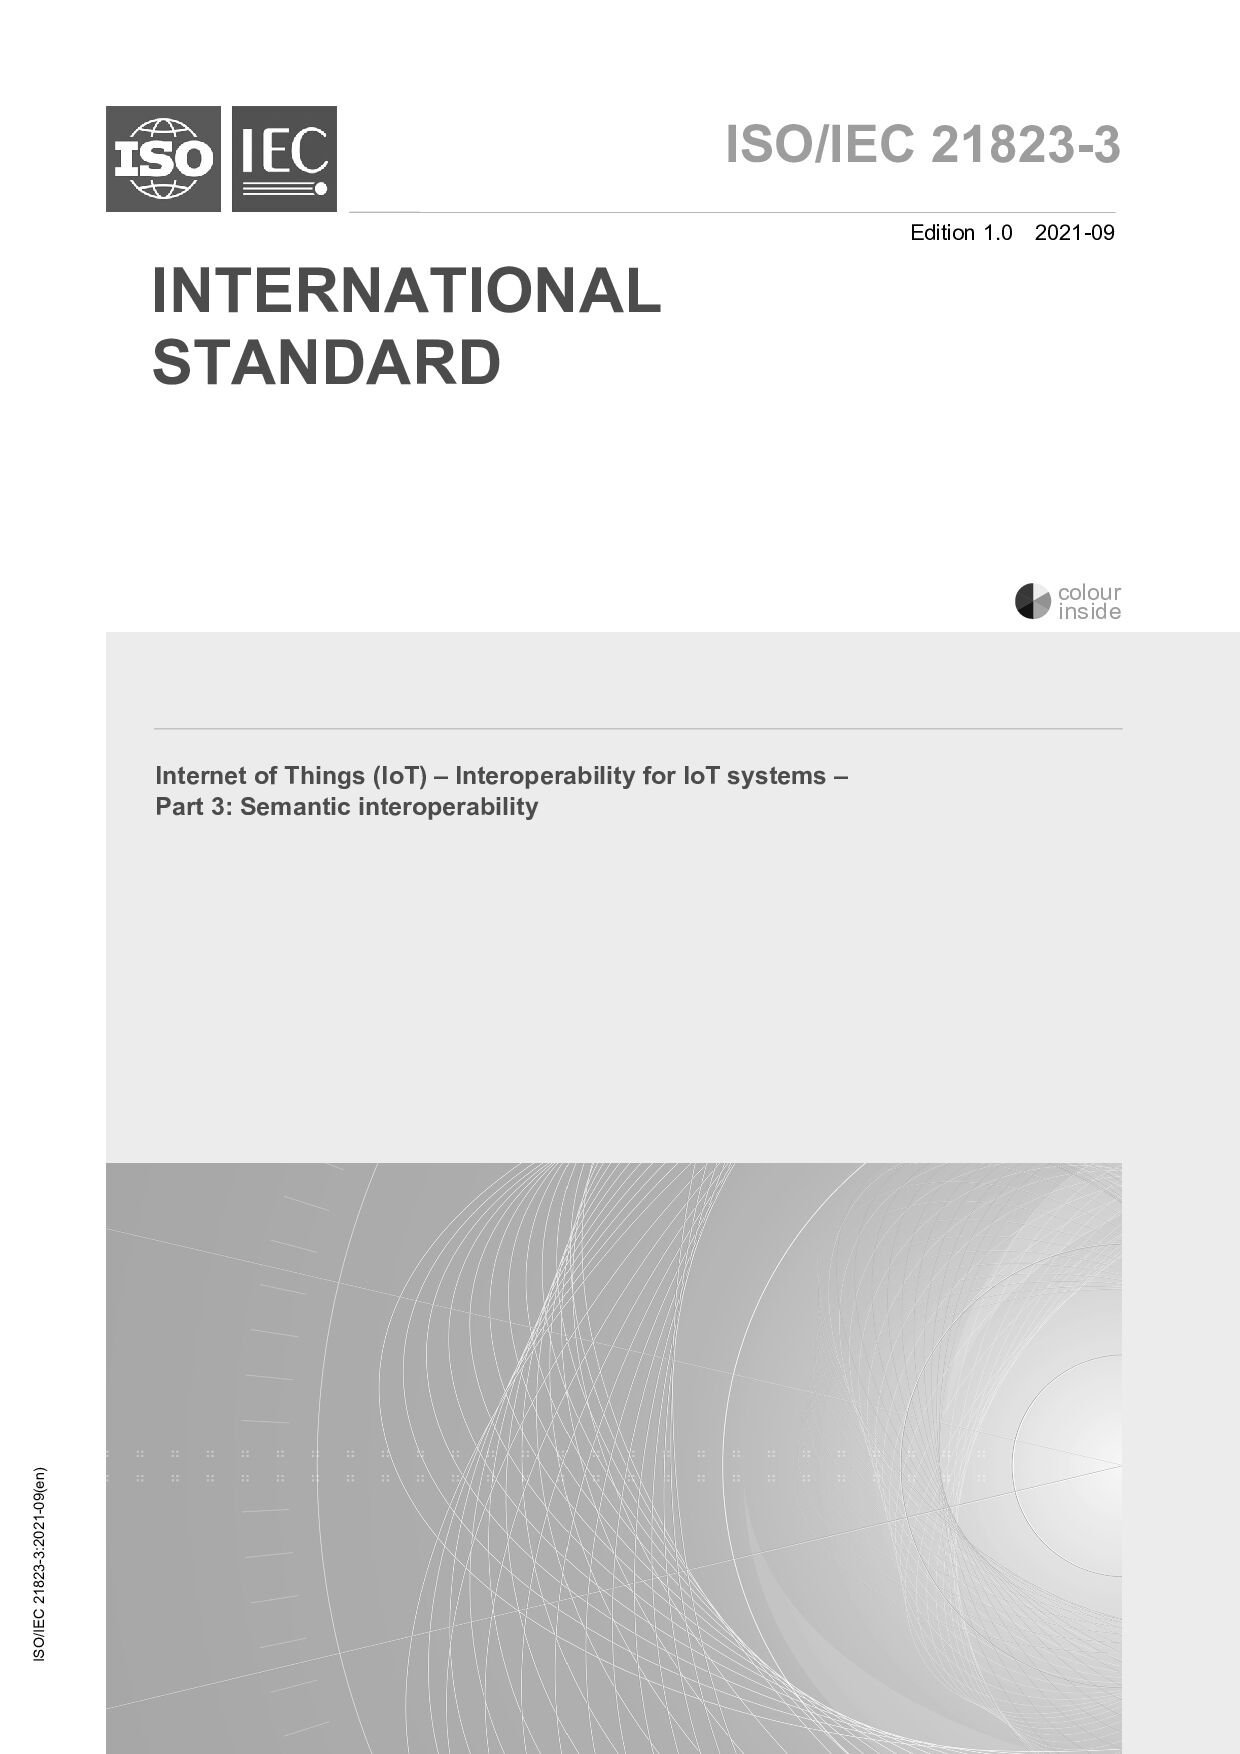 ISO/IEC 21823-3:2021封面图